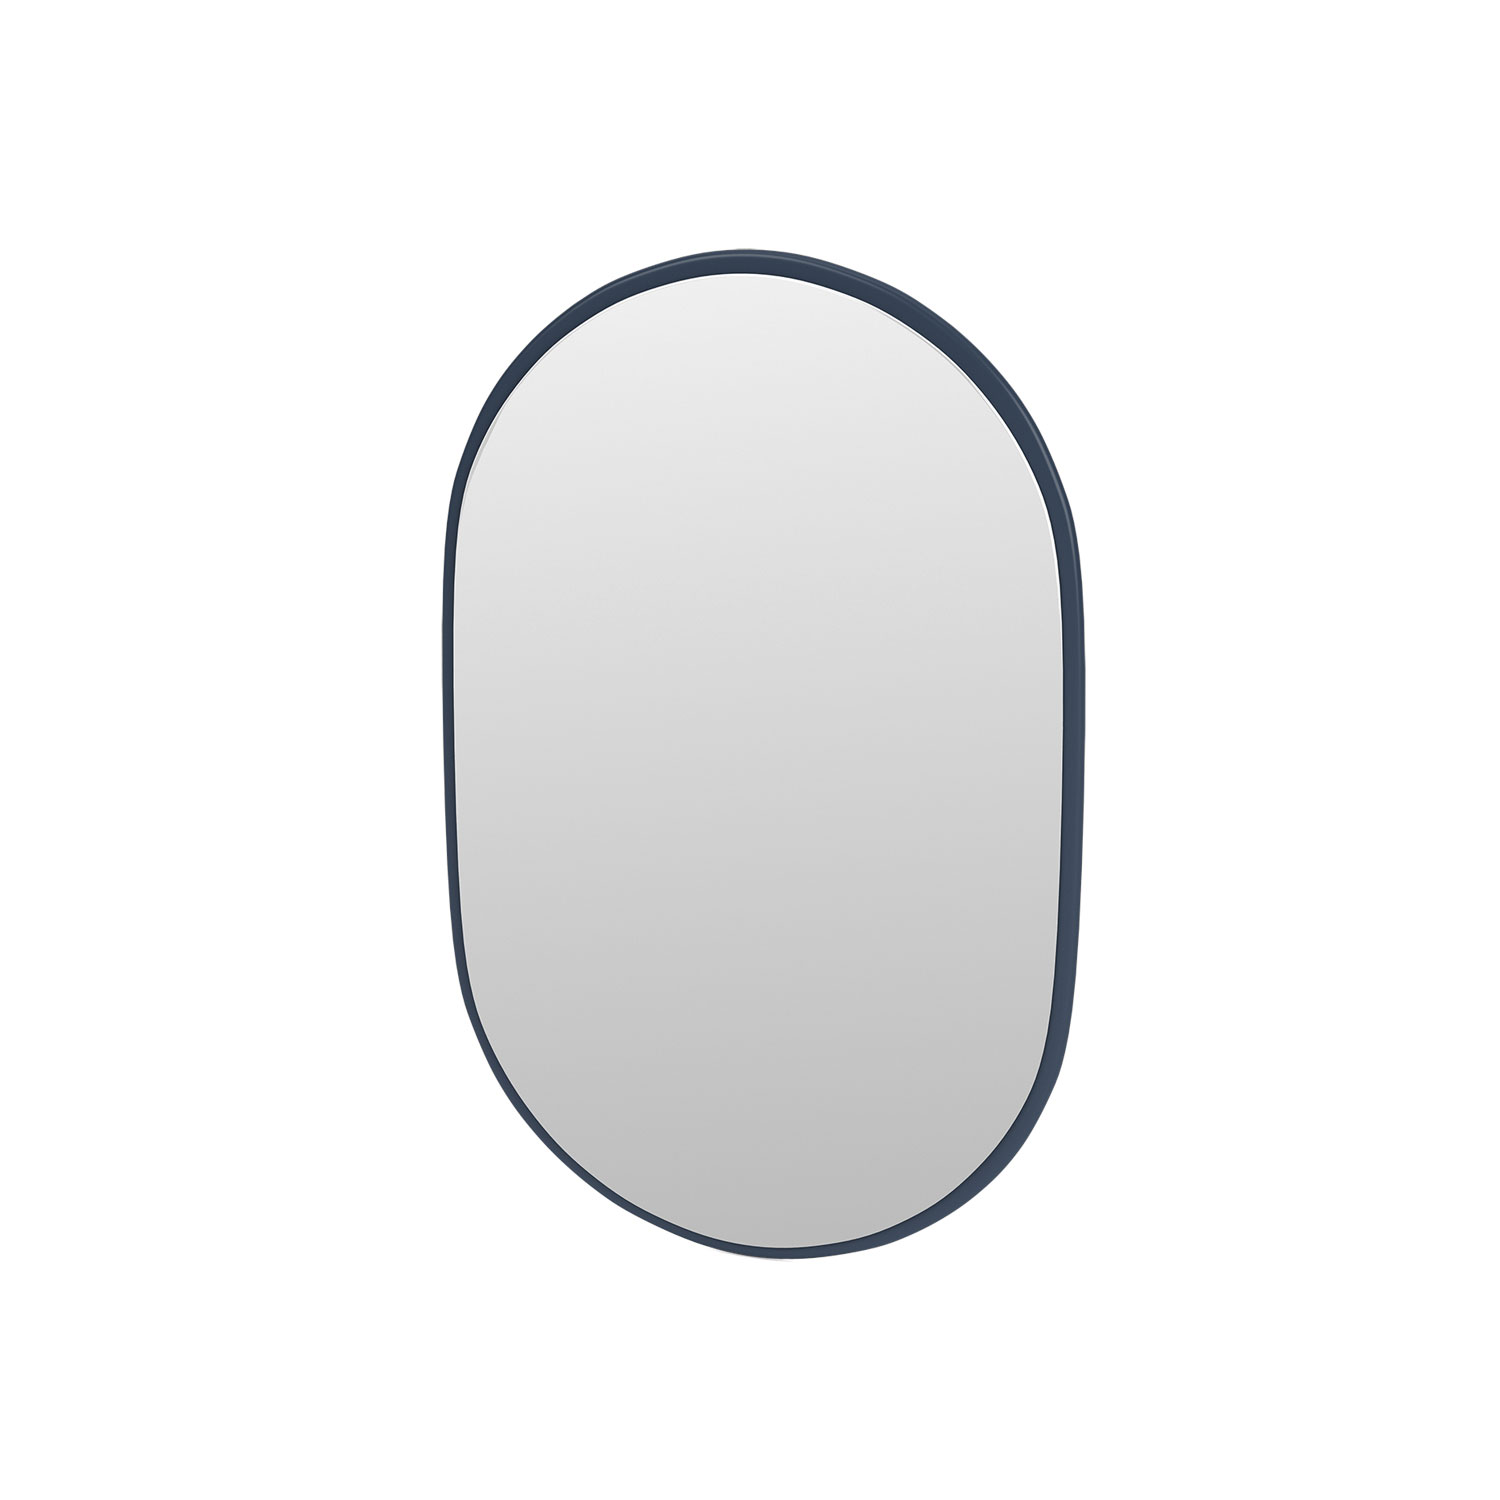 LOOK oval mirror, Juniper